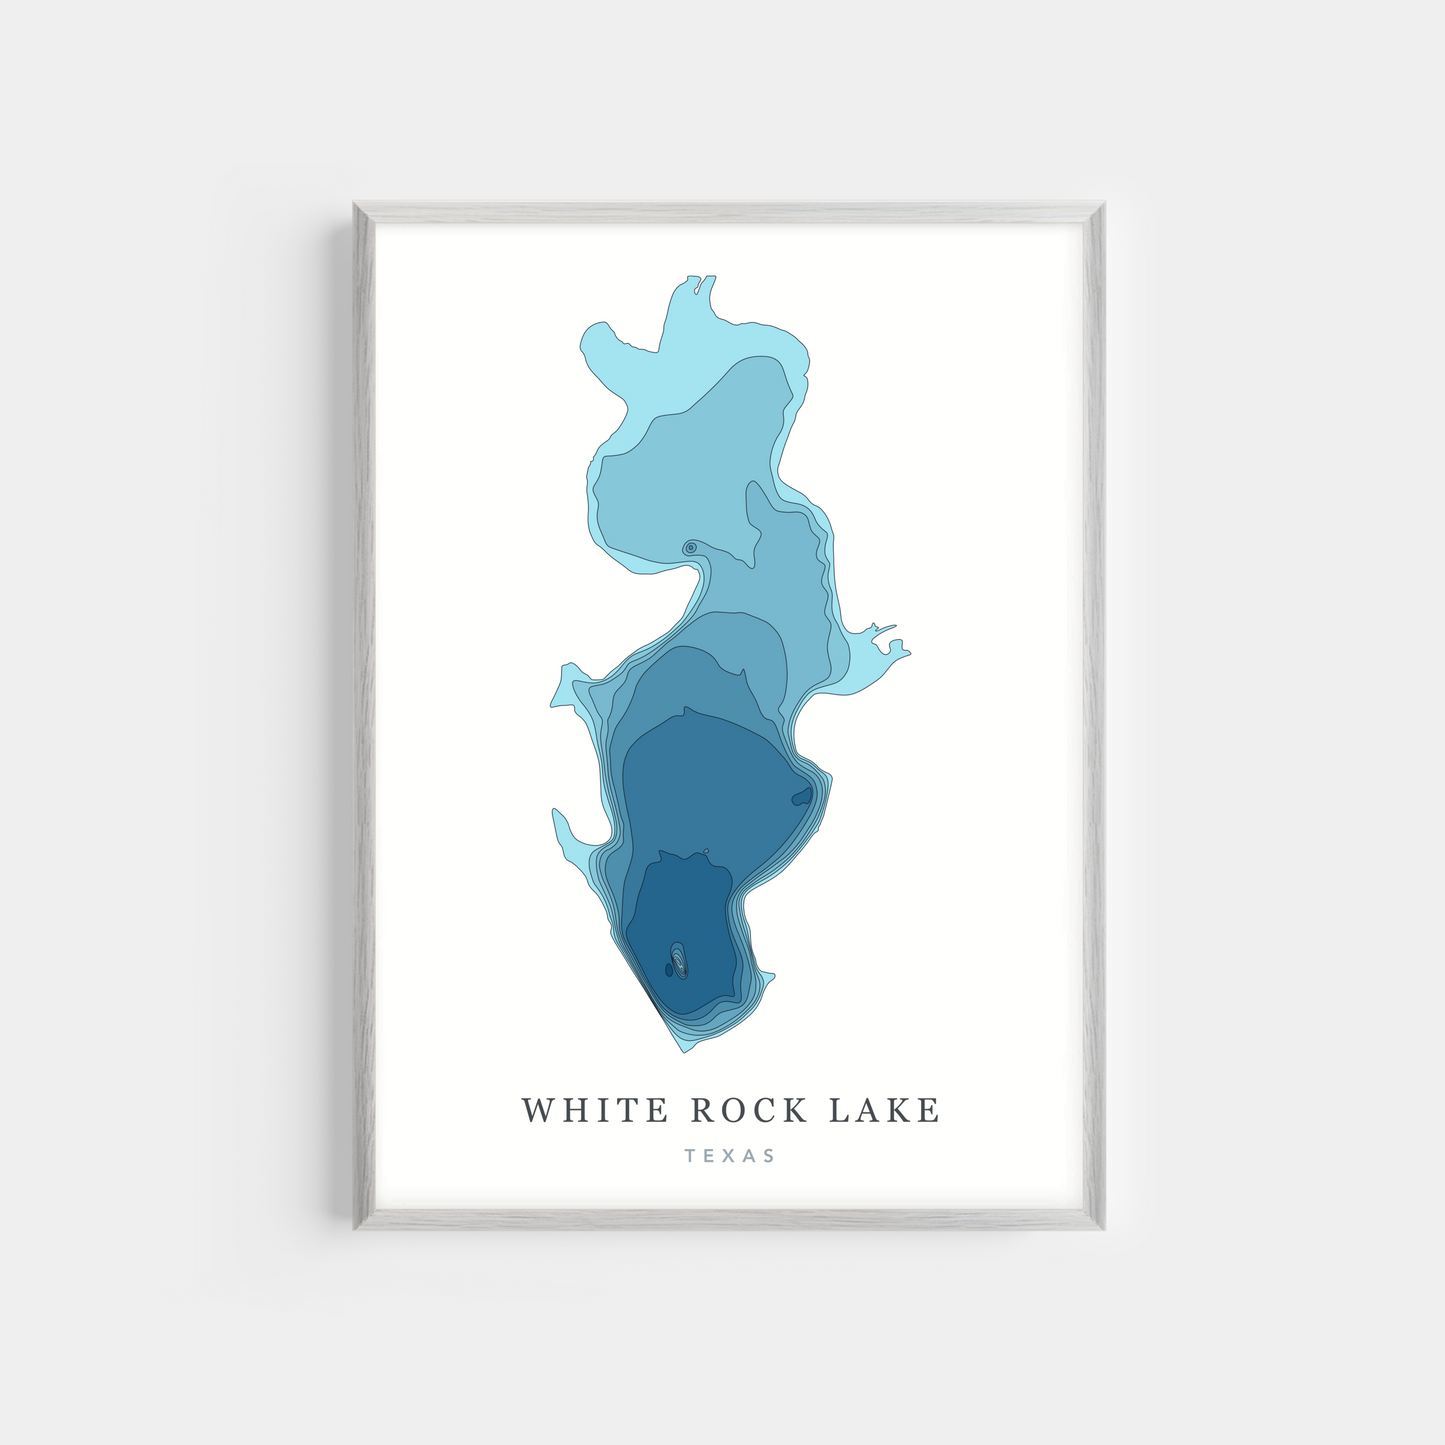 White Rock Lake, Texas | Photo Print